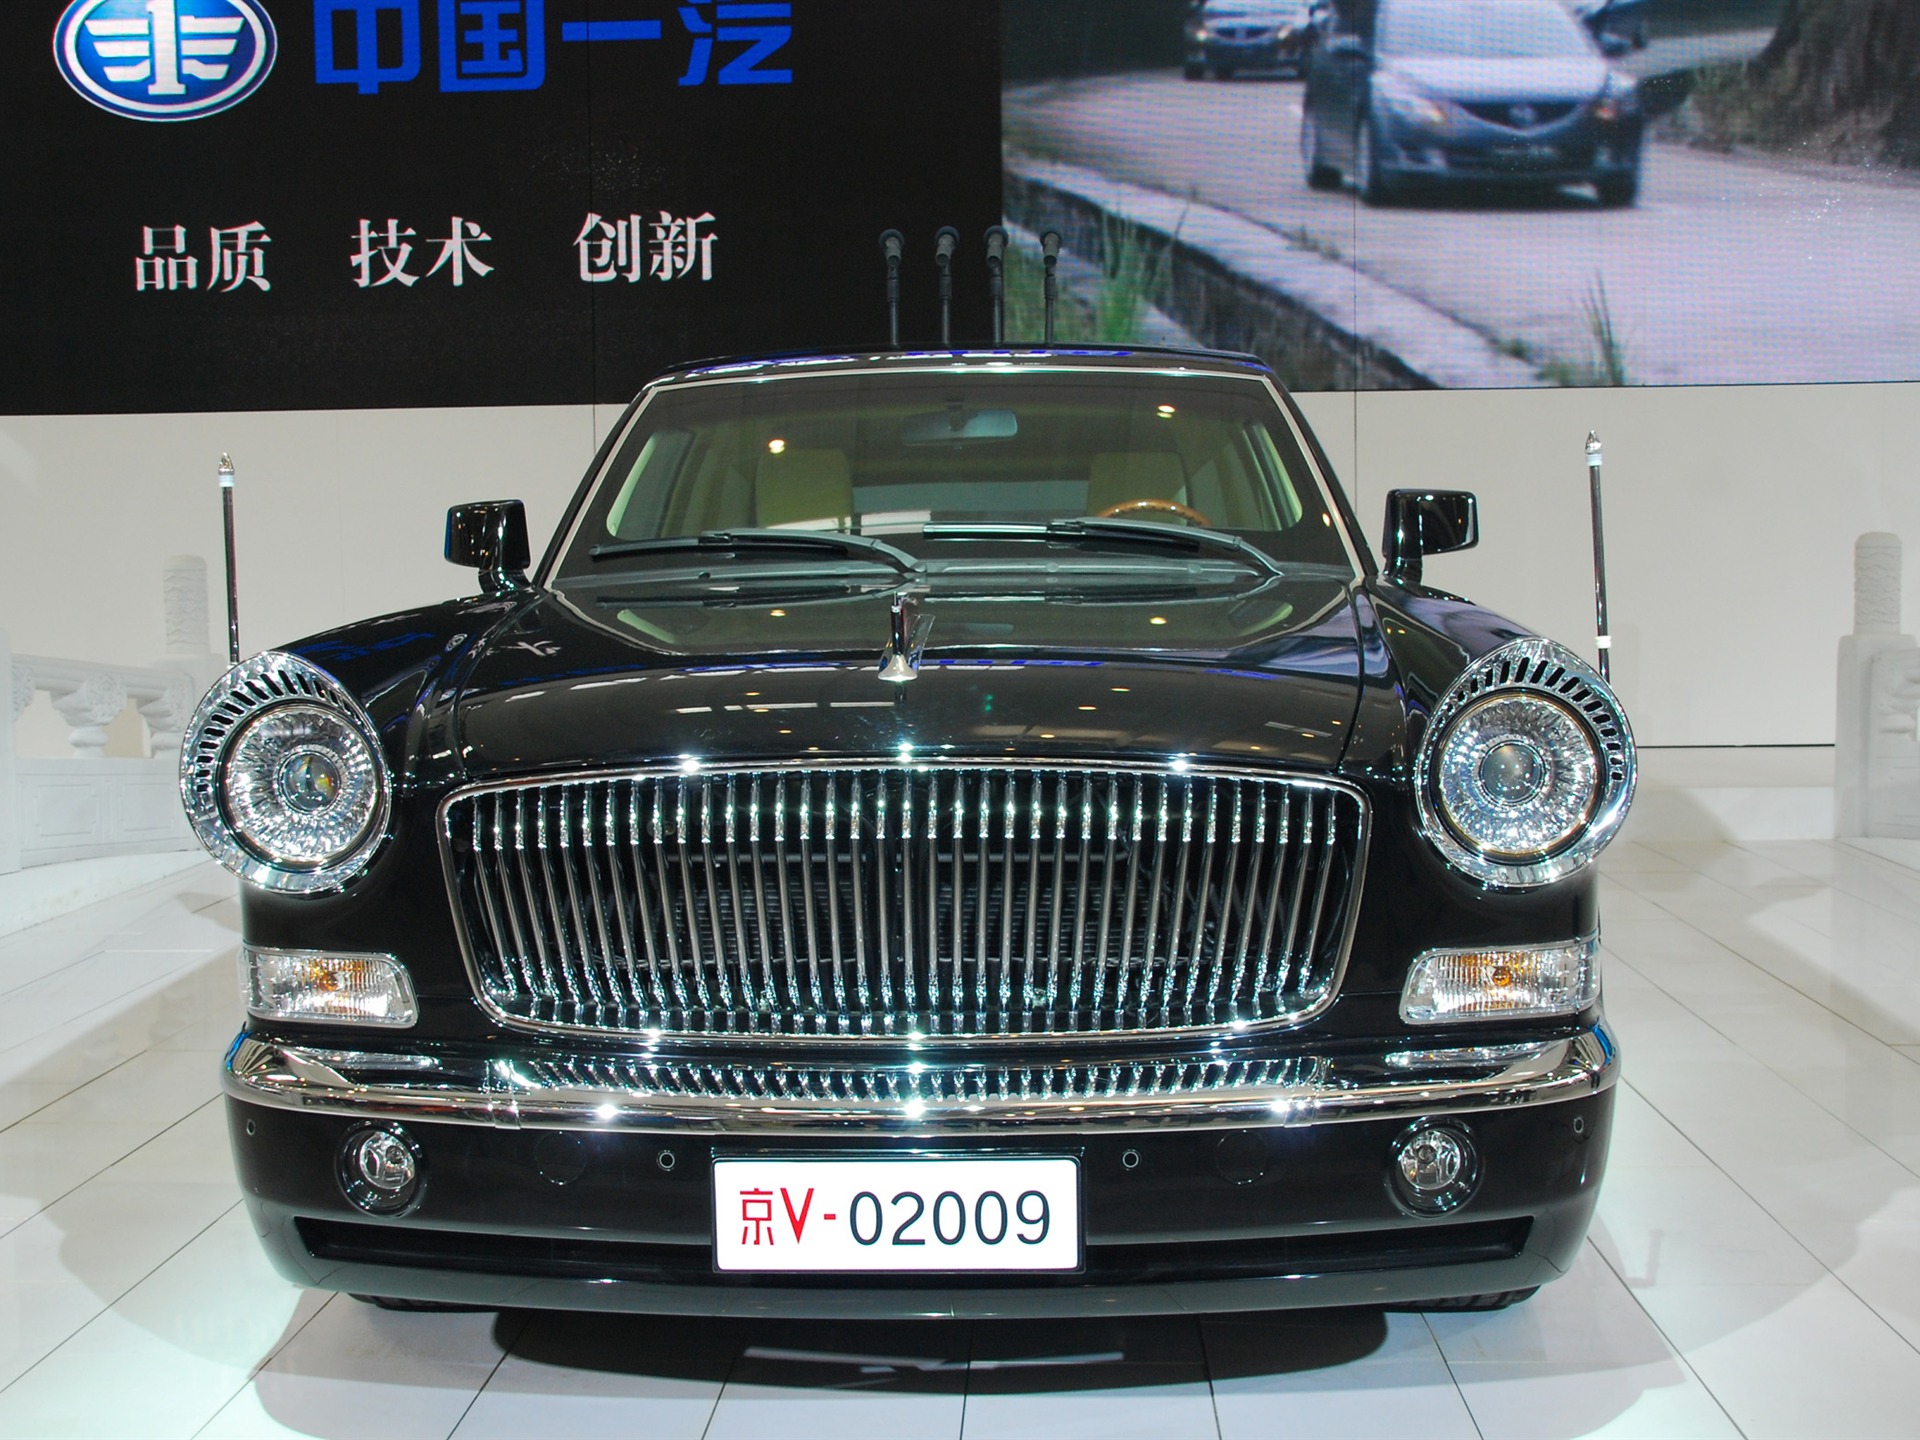 2010北京国际车展(一) (z321x123作品)2 - 1920x1440